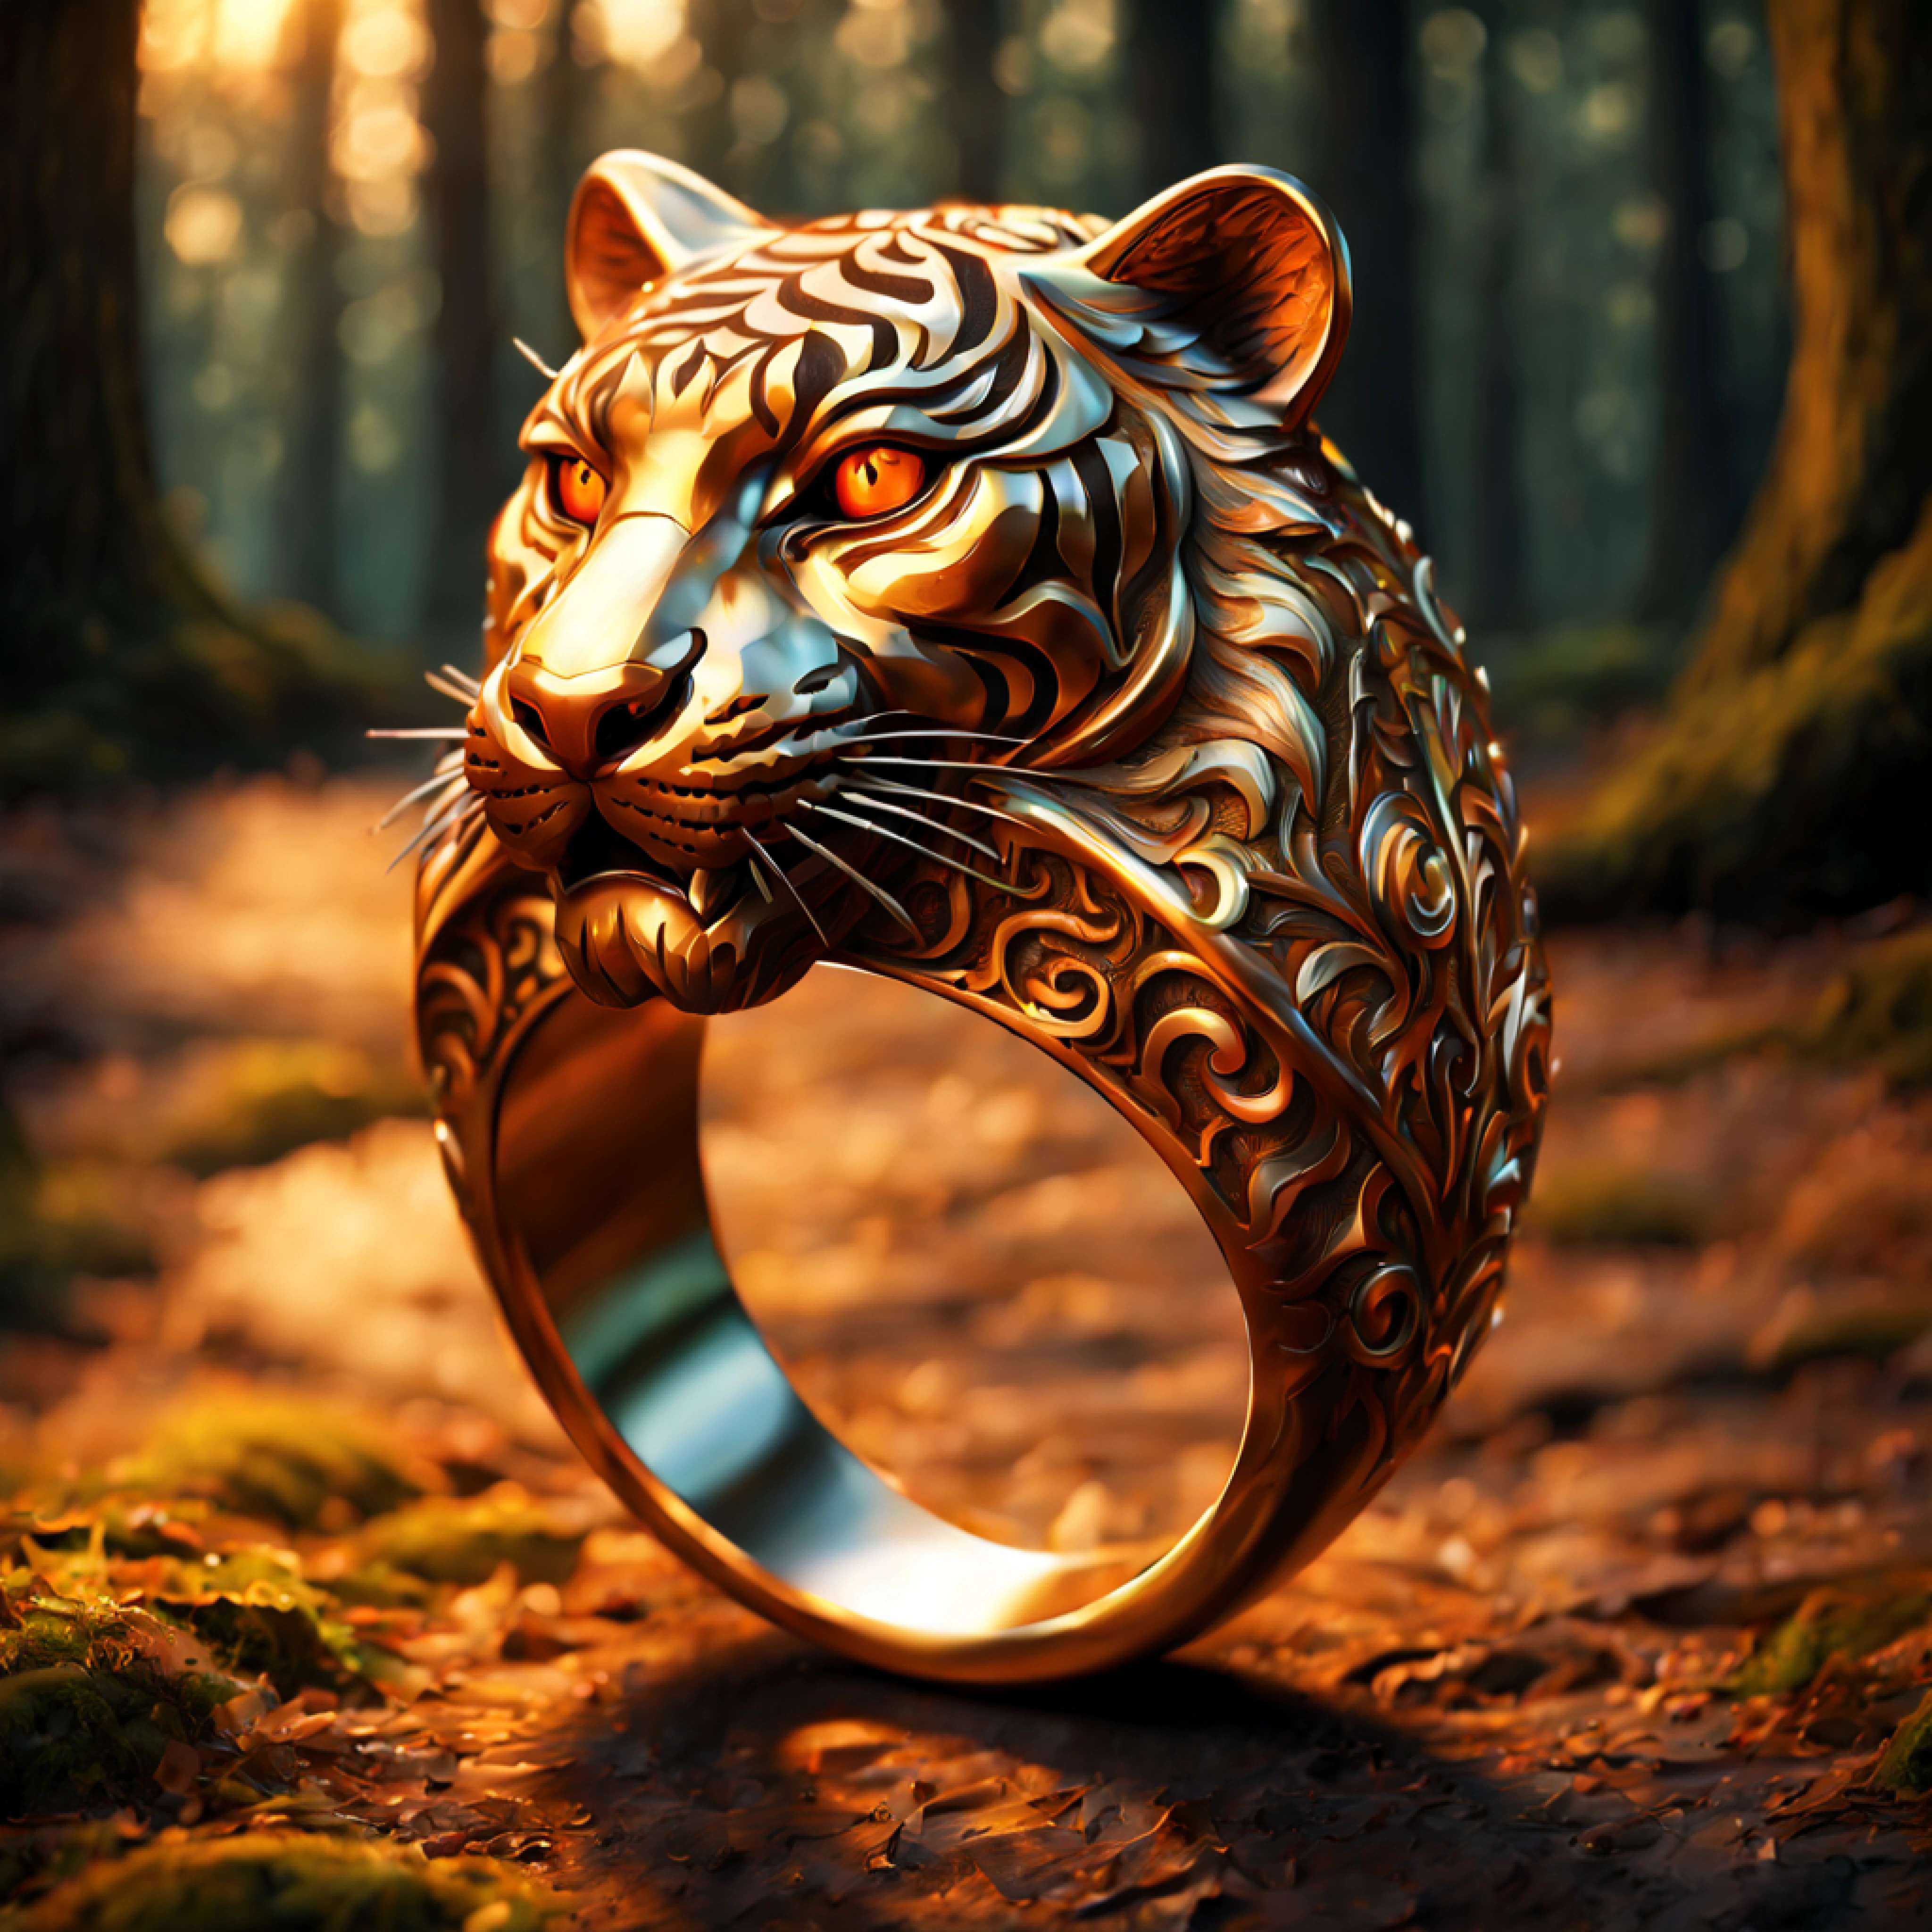 (3D描画), (複雑な虎の彫刻が施された雄大な指輪:1.2), 豊かな華やかなパターン, オレンジ (金属反射:1.2), (ロマンチックな森の背景:1.4)